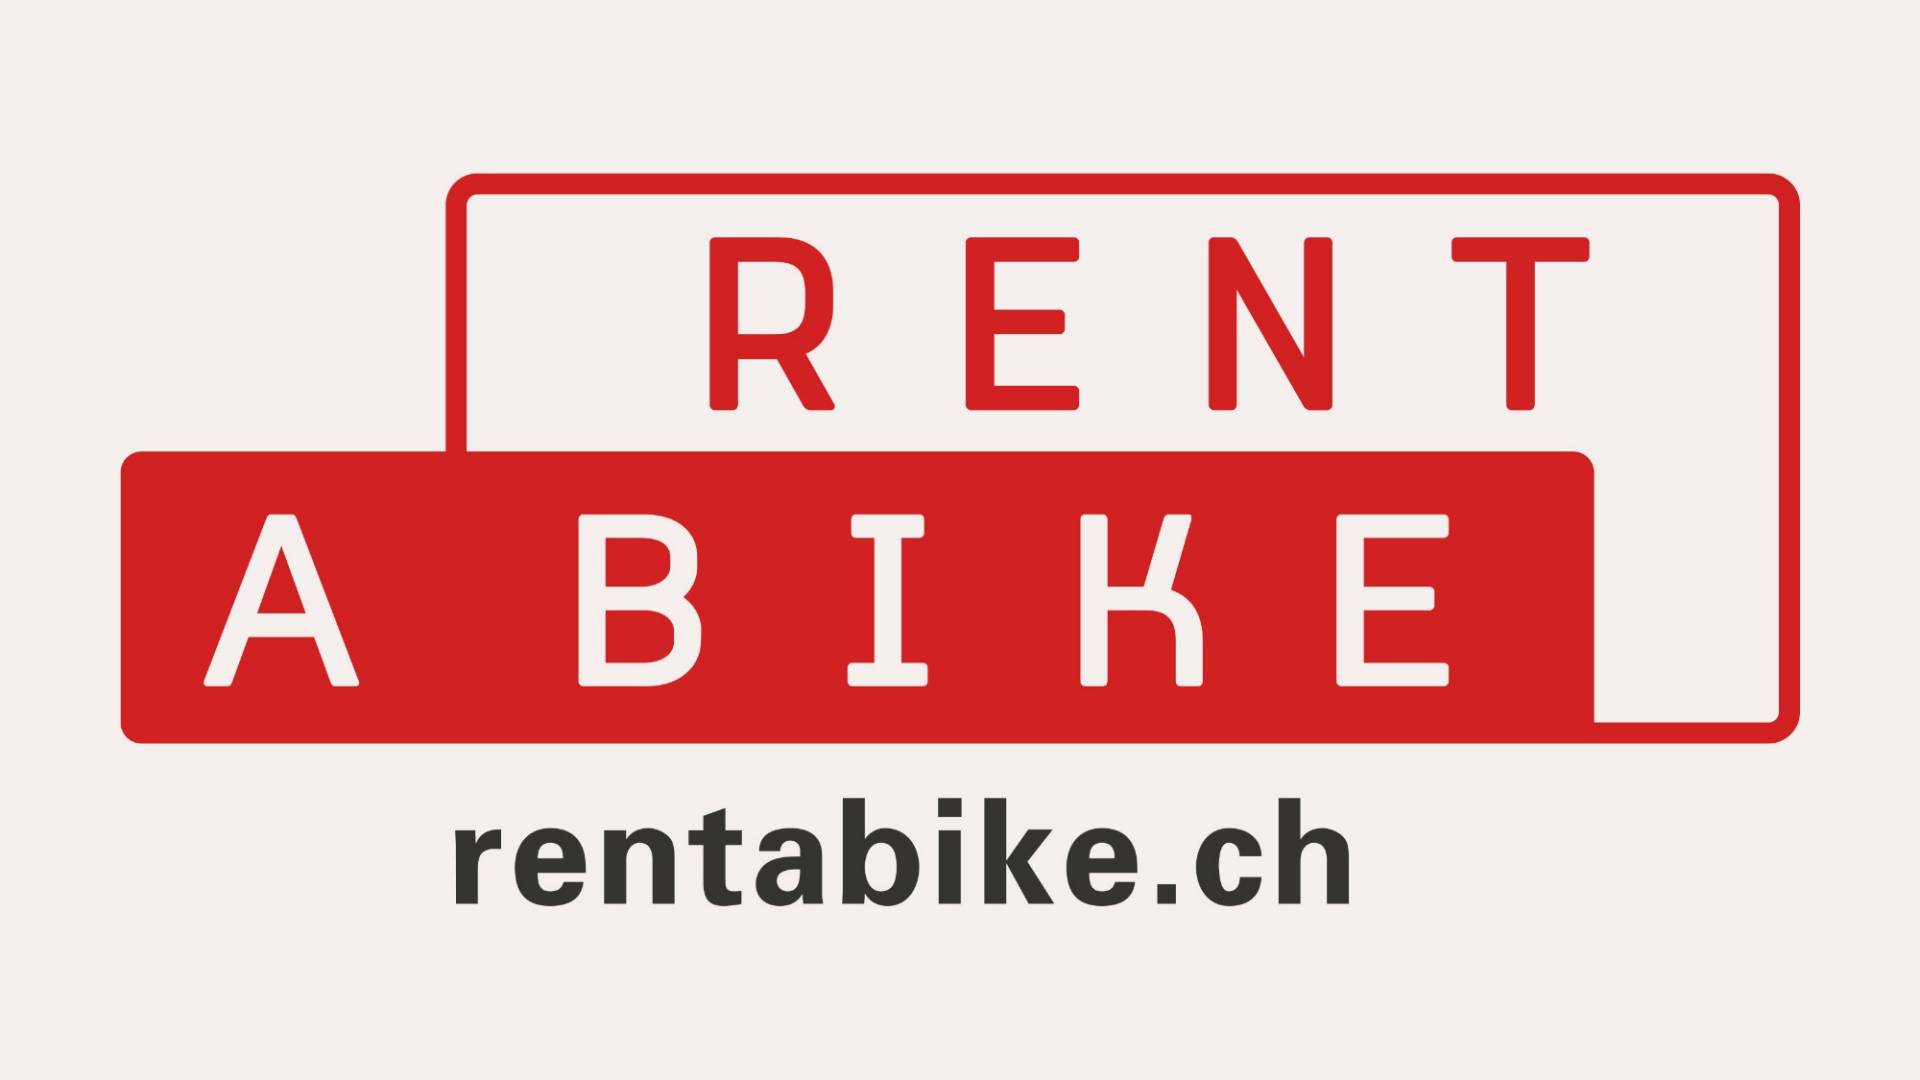 rent-a-bike-teaser.jpg